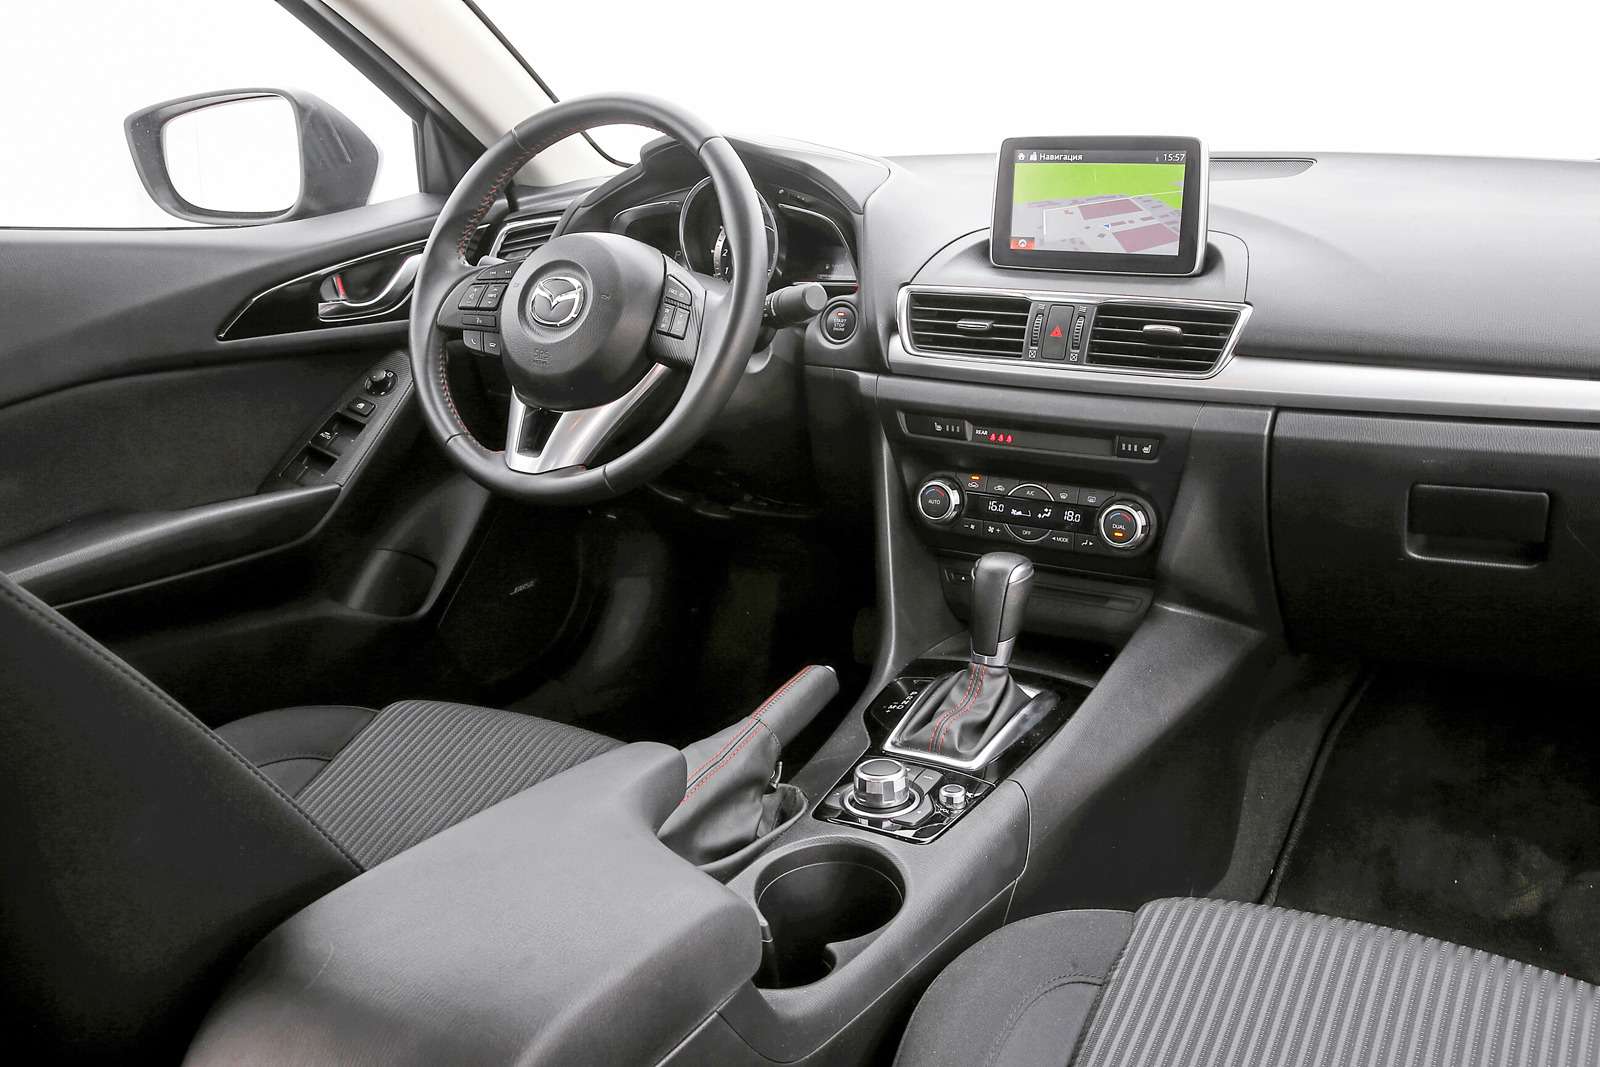 Mazda 3. У Мазды самый стильный интерьер. Дисплей мультимедийной системы MZD Connect расположен правильнее, чем у конкурентов, – на уровне глаз.